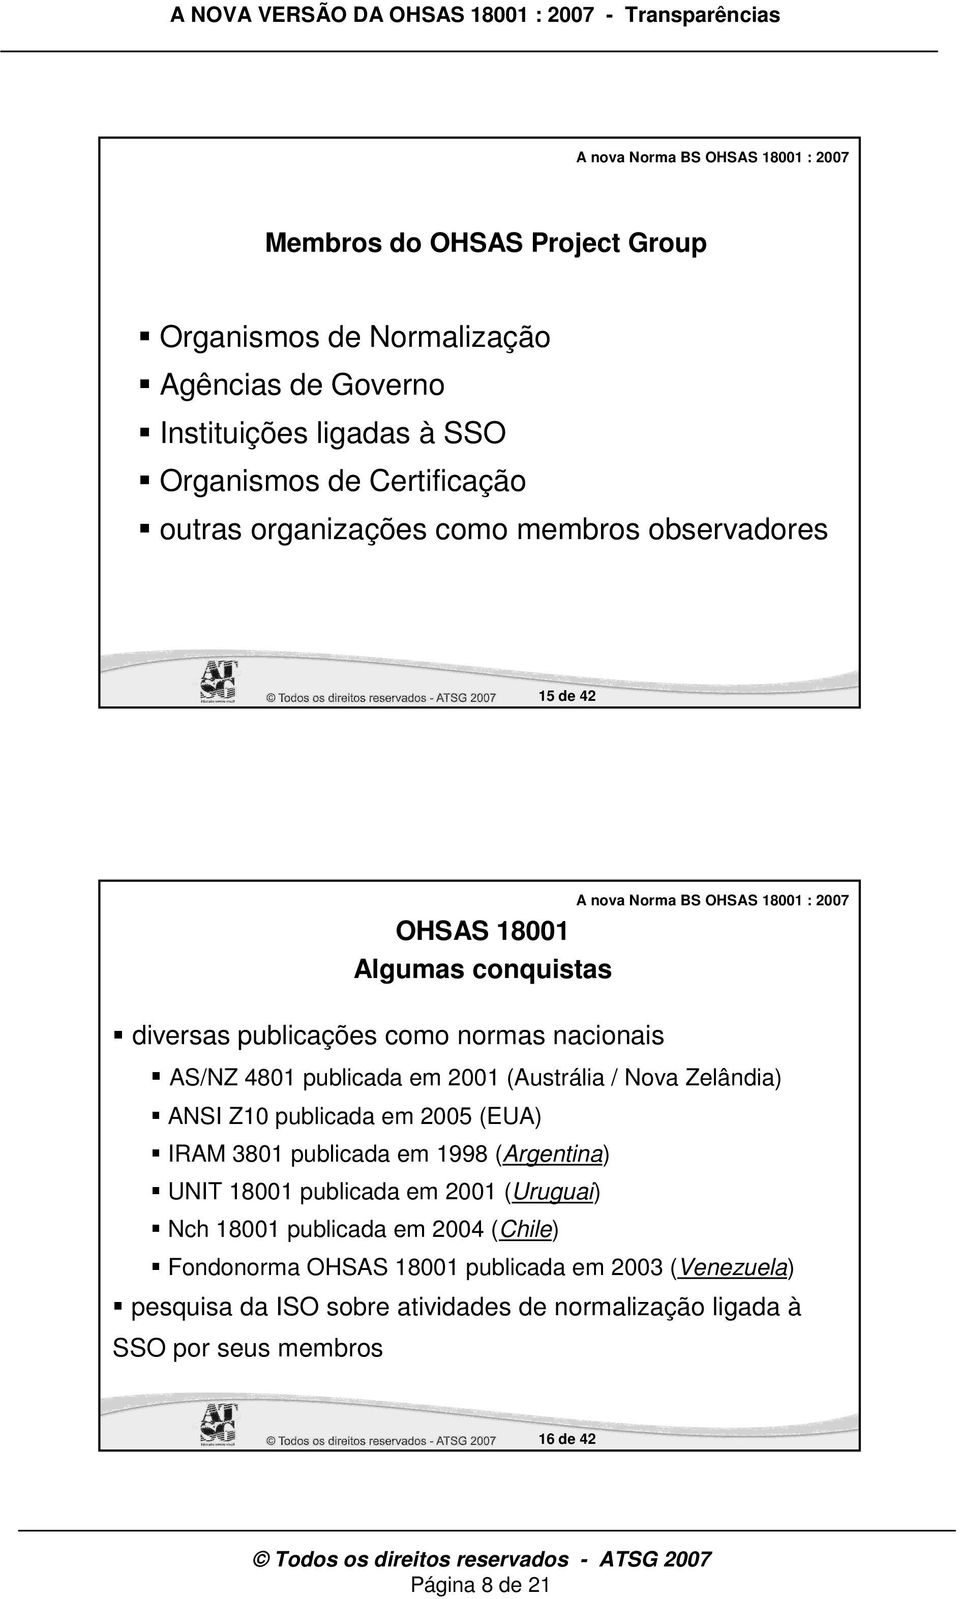 Zelândia) ANSI Z10 publicada em 2005 (EUA) IRAM 3801 publicada em 1998 (Argentina) UNIT 18001 publicada em 2001 (Uruguai) Nch 18001 publicada em 2004